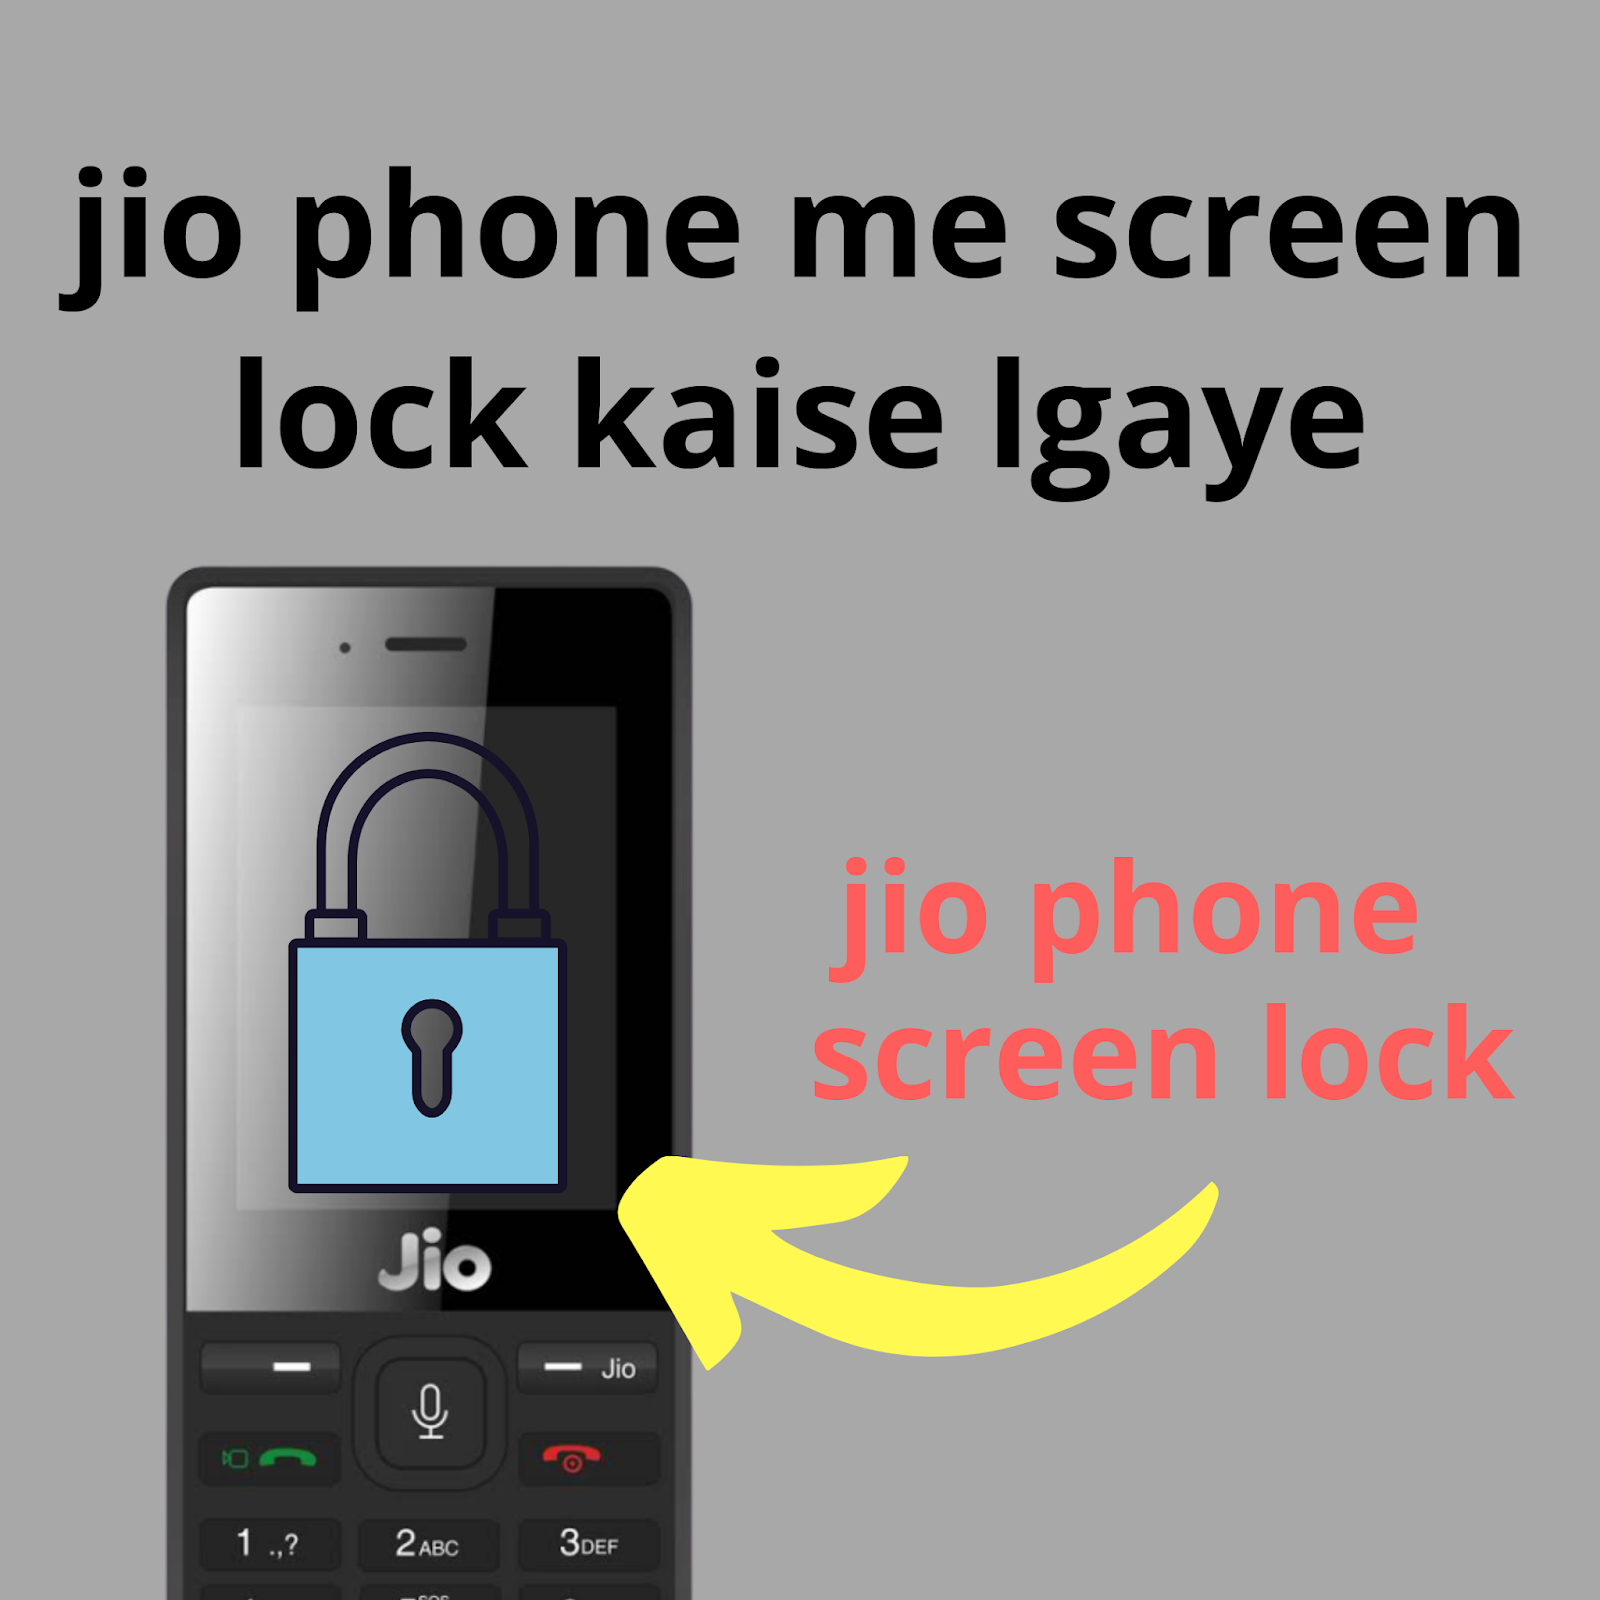 jio phone me screen lock kaise lgaye